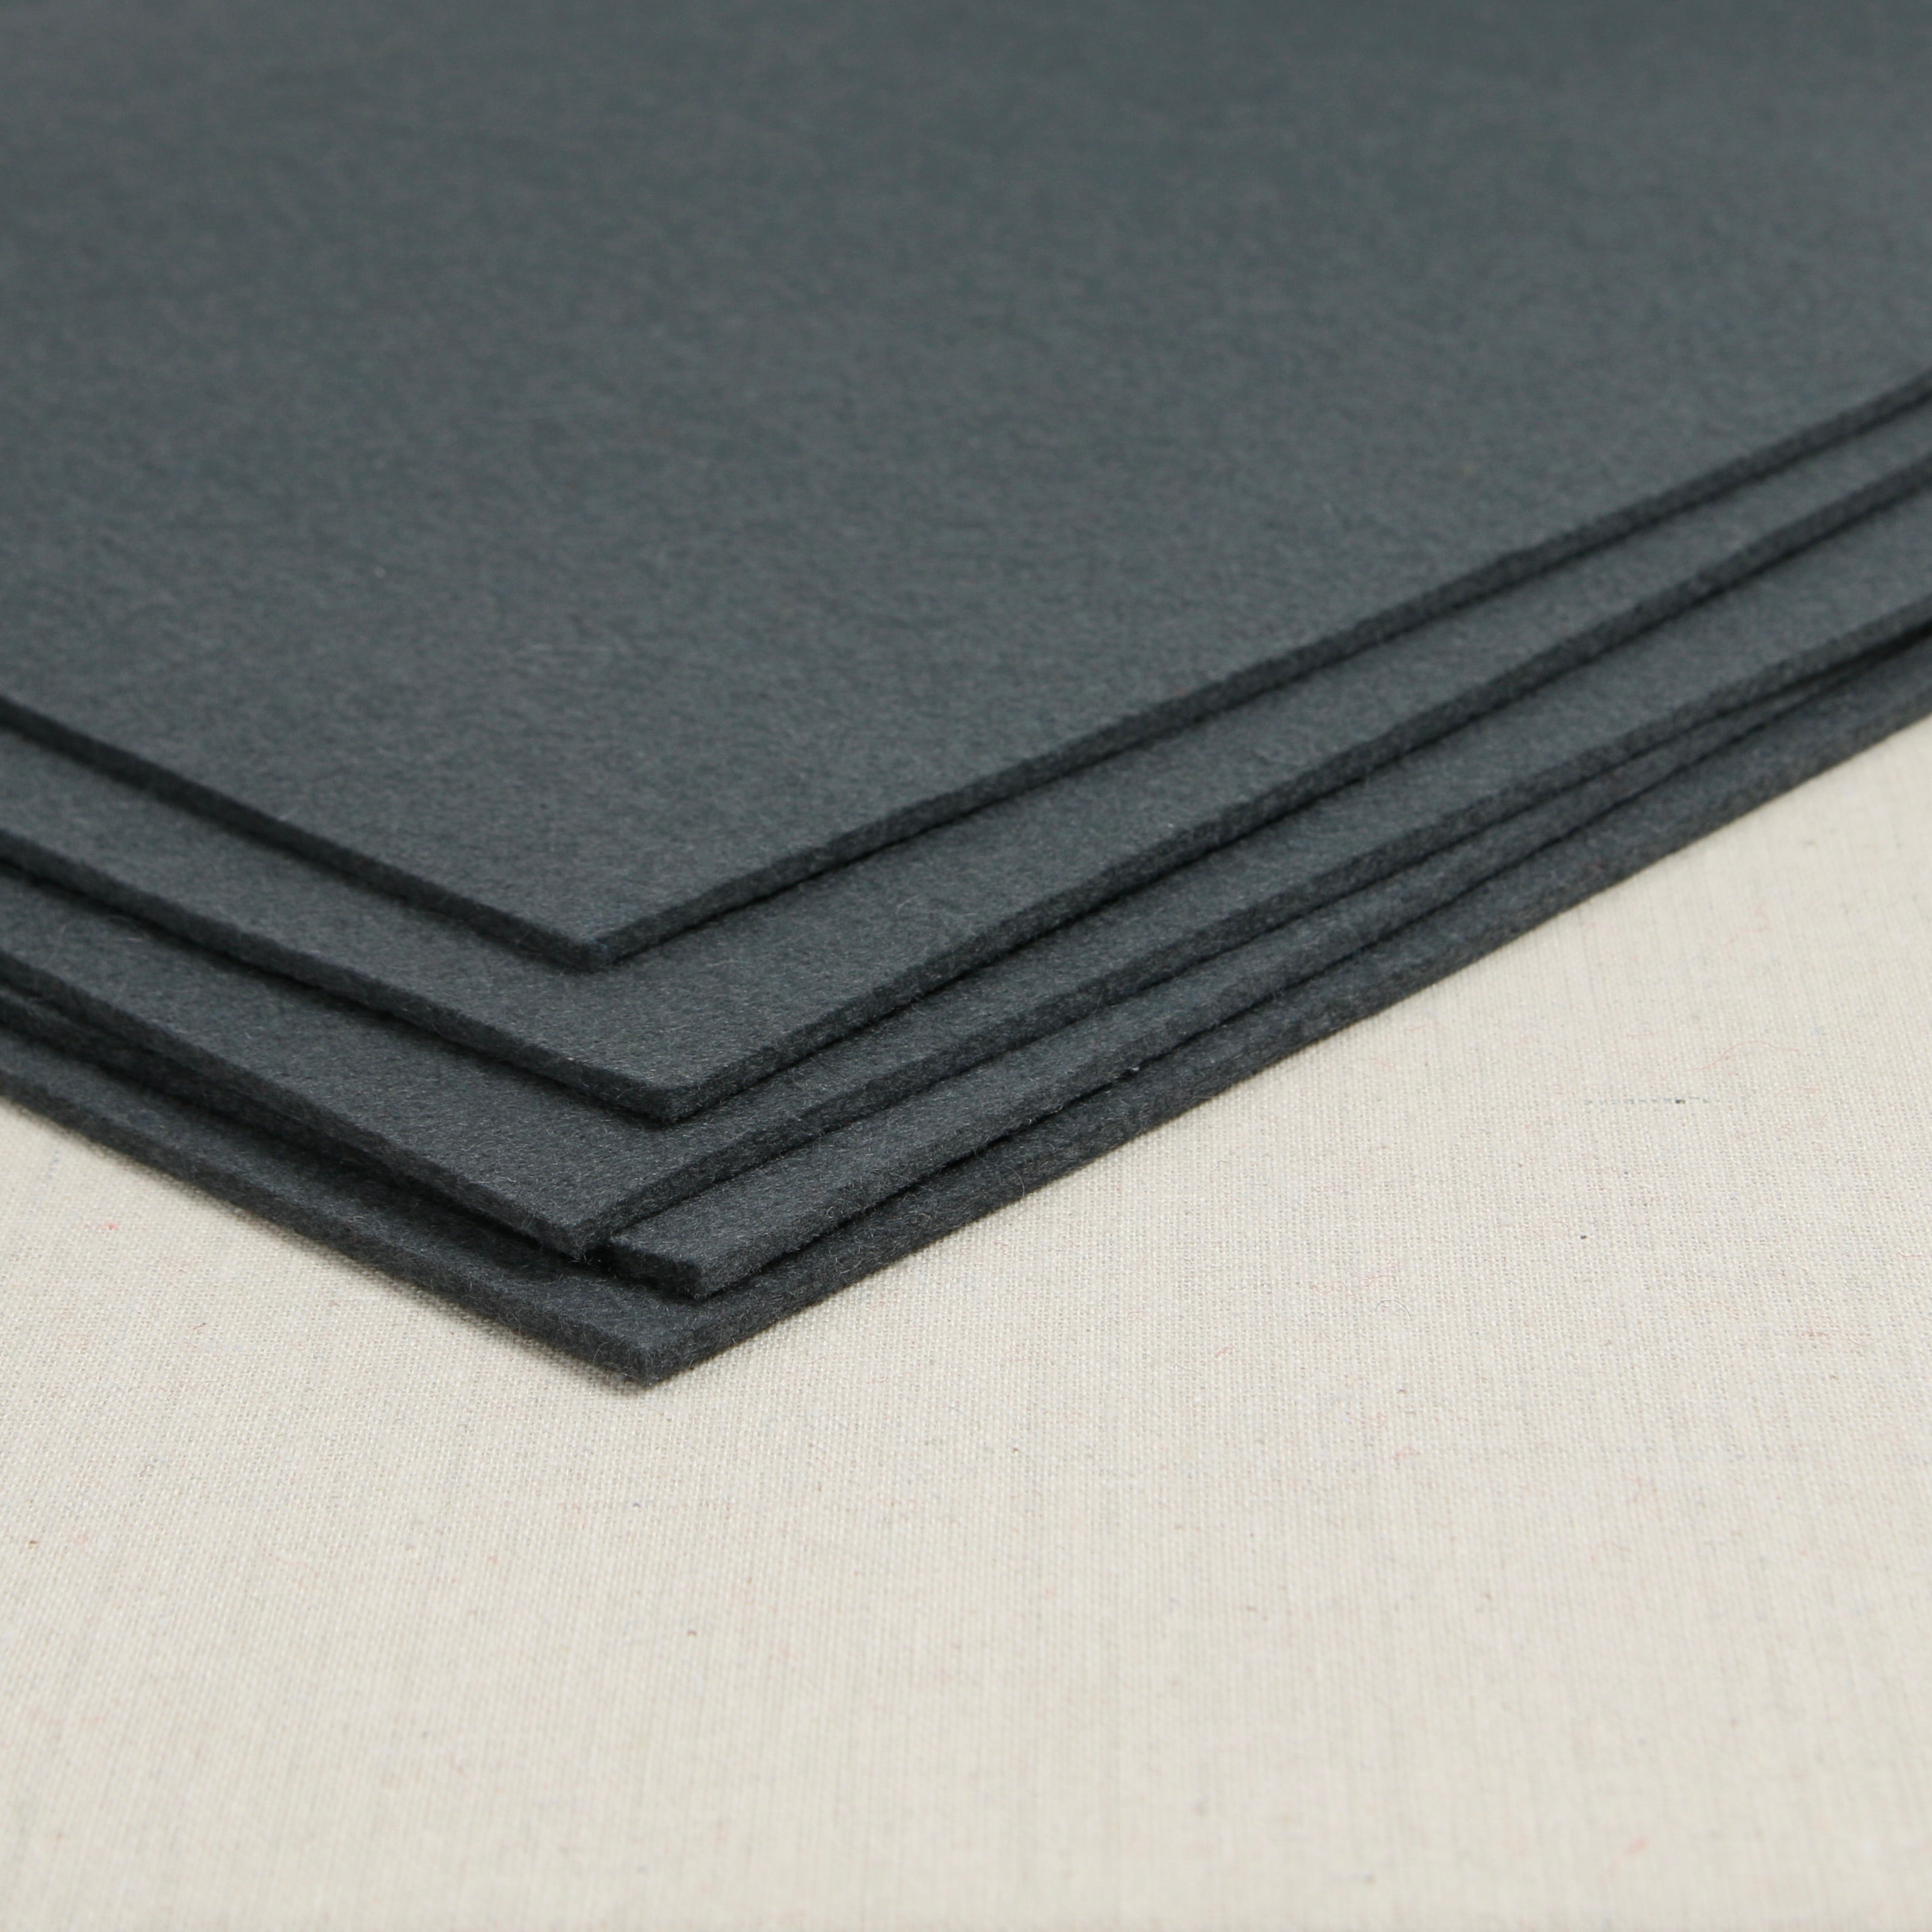 12 x 72 x 3/8 Gray Pressed Wool Felt Sheet